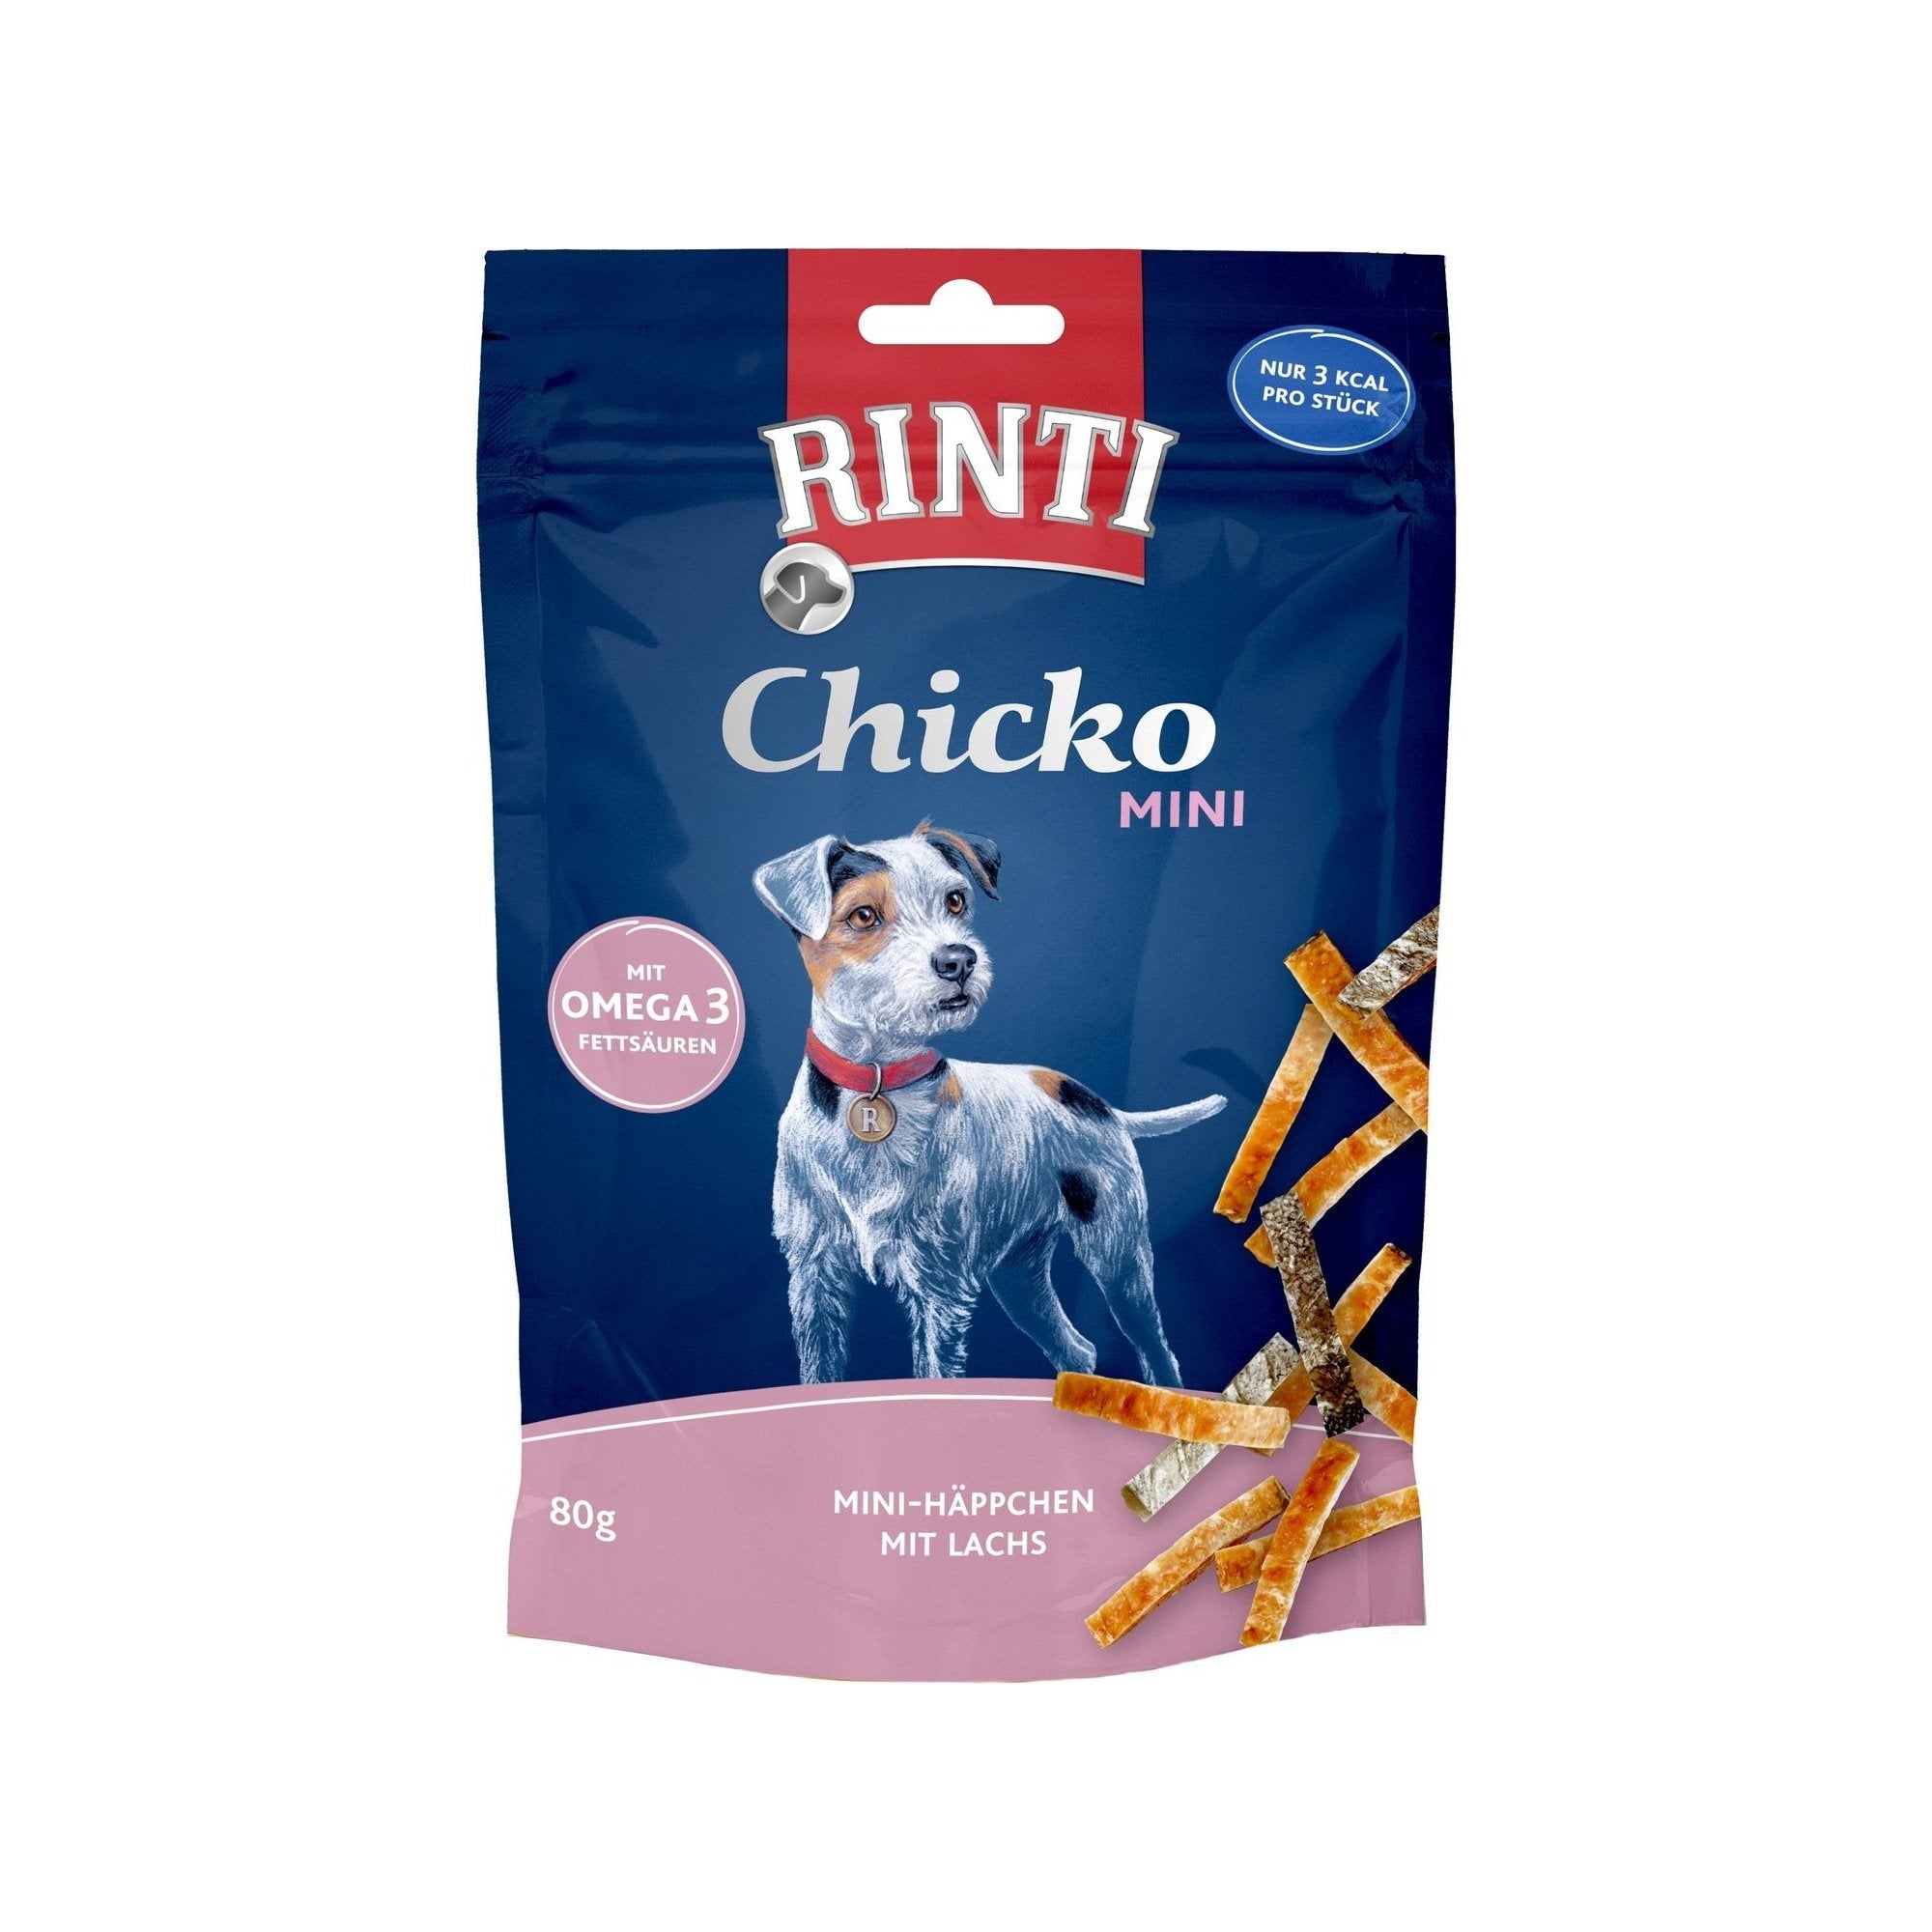 Artikel mit dem Namen Rinti Chicko Mini Häppchen mit Lachs im Shop von zoo.de , dem Onlineshop für nachhaltiges Hundefutter und Katzenfutter.